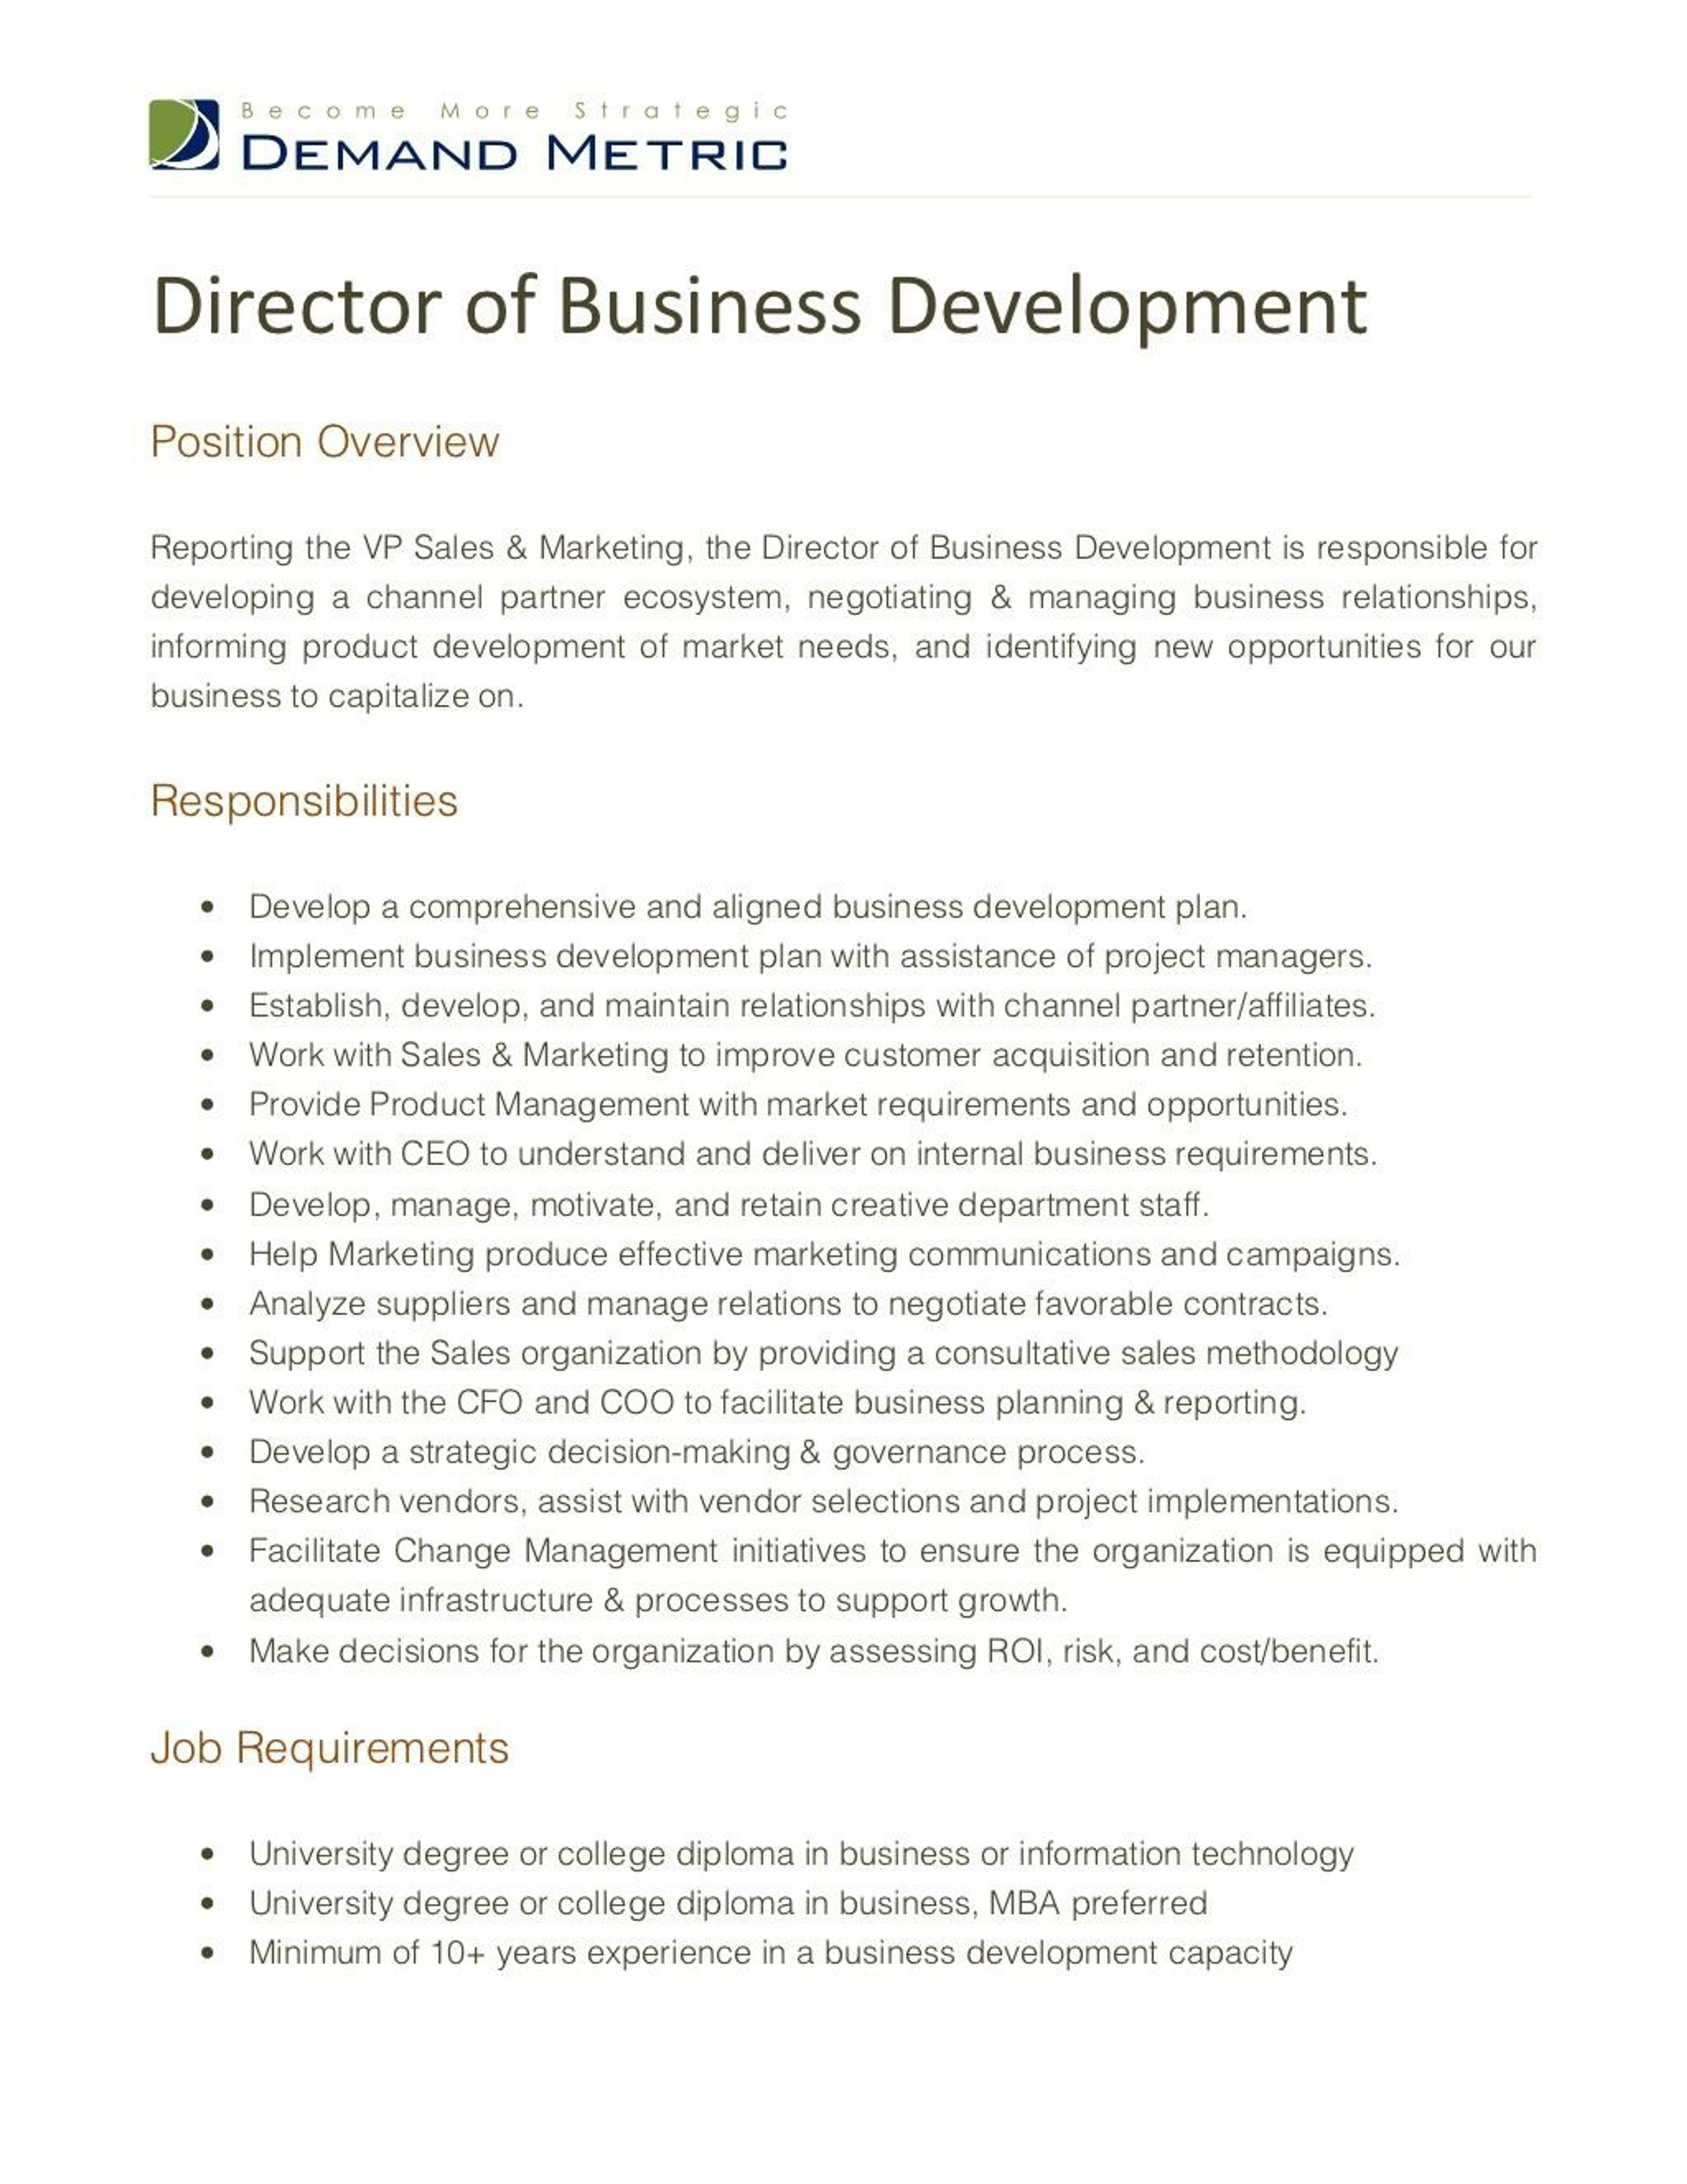 PPT   Director of Business Development Job Description PowerPoint ...